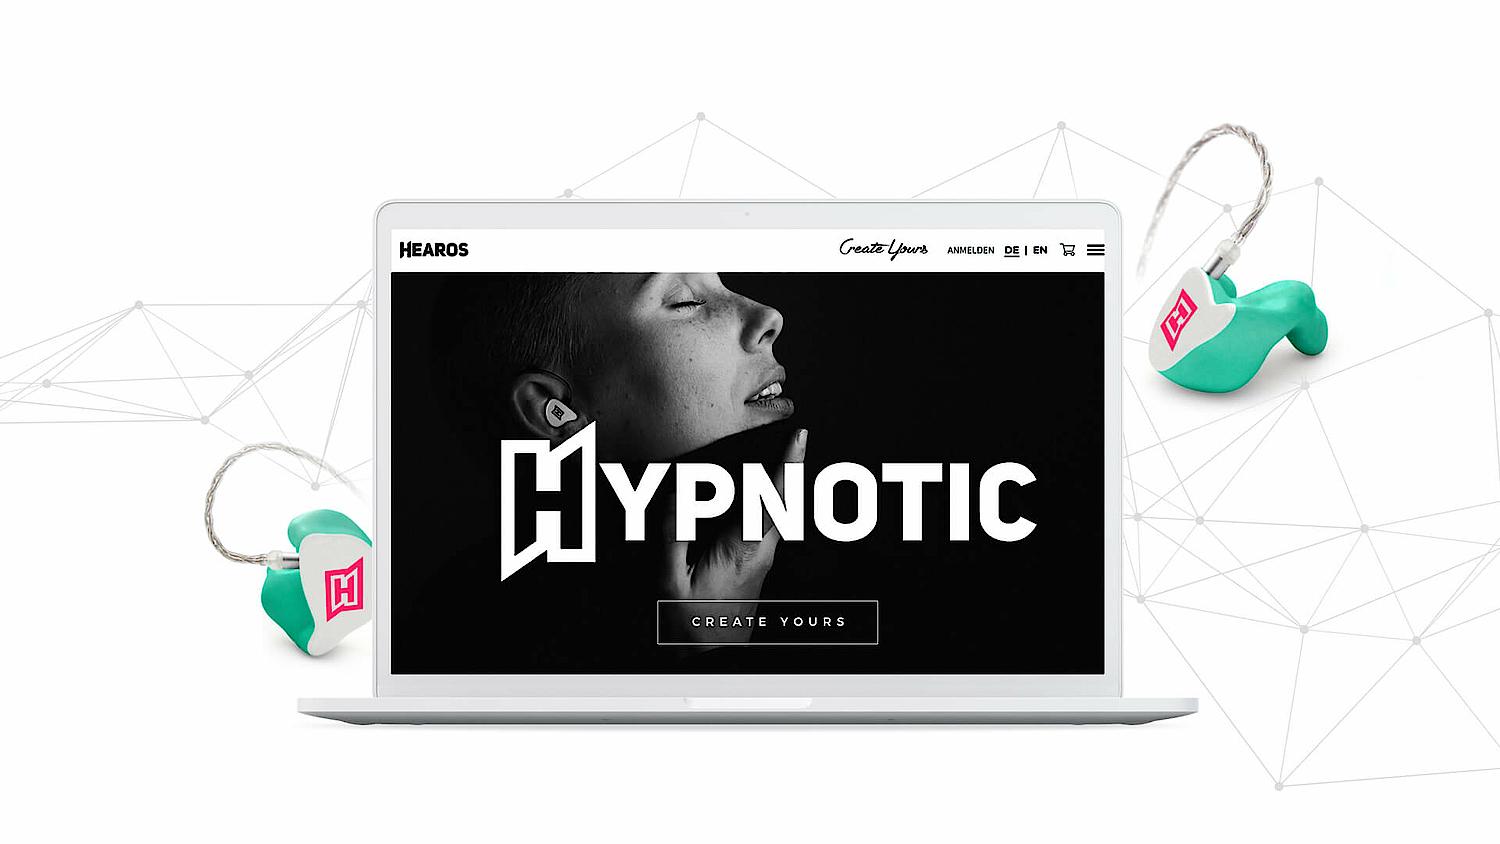 Hearos Webshop mit Header Bild 'Hypnotic' und In Ears